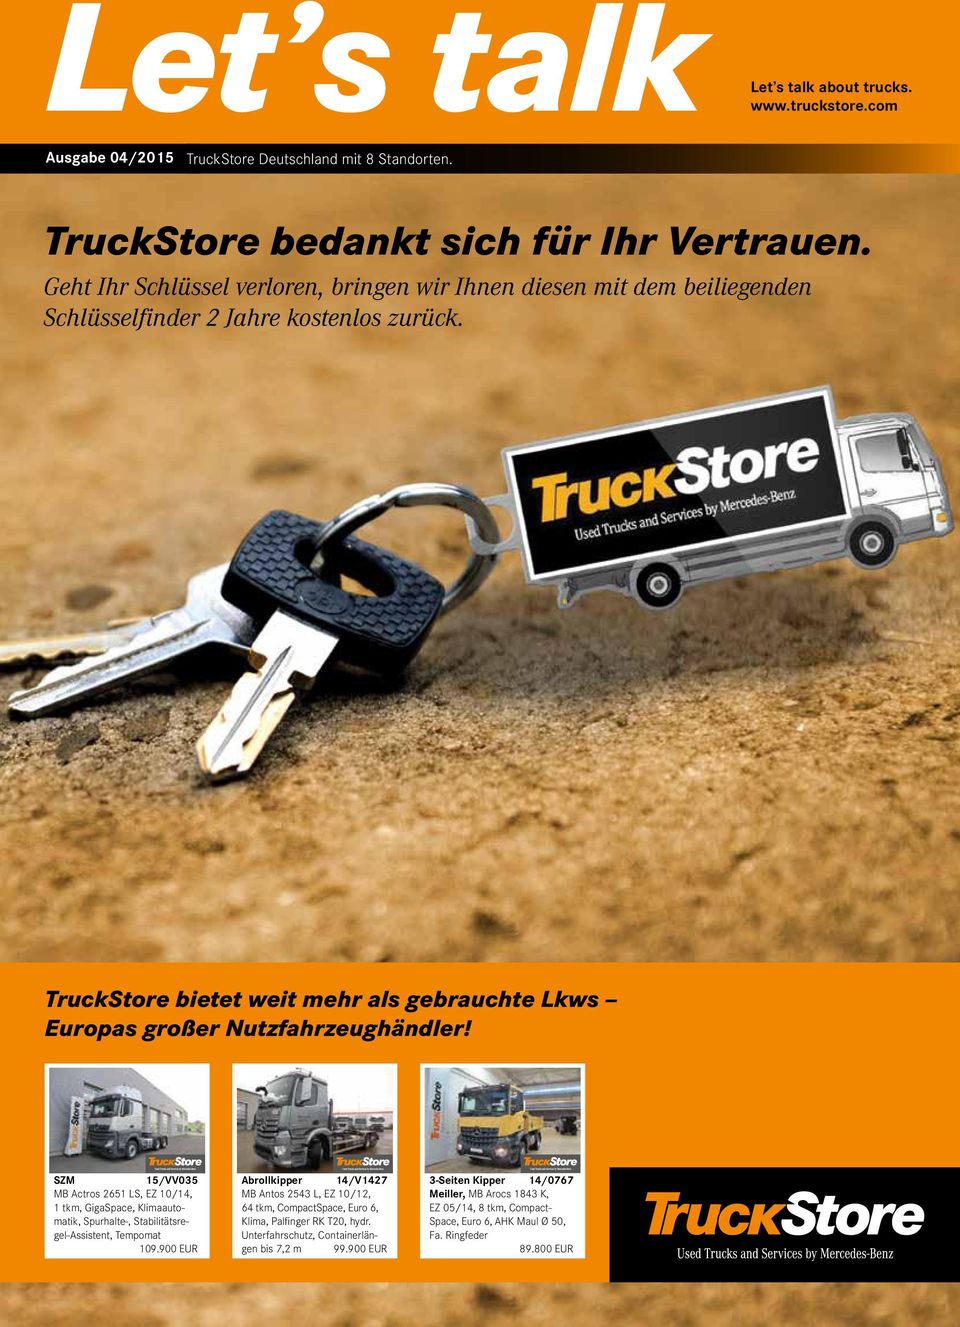 TruckStore bietet weit mehr als gebrauchte Lkws Europas großer Nutzfahrzeughändler!